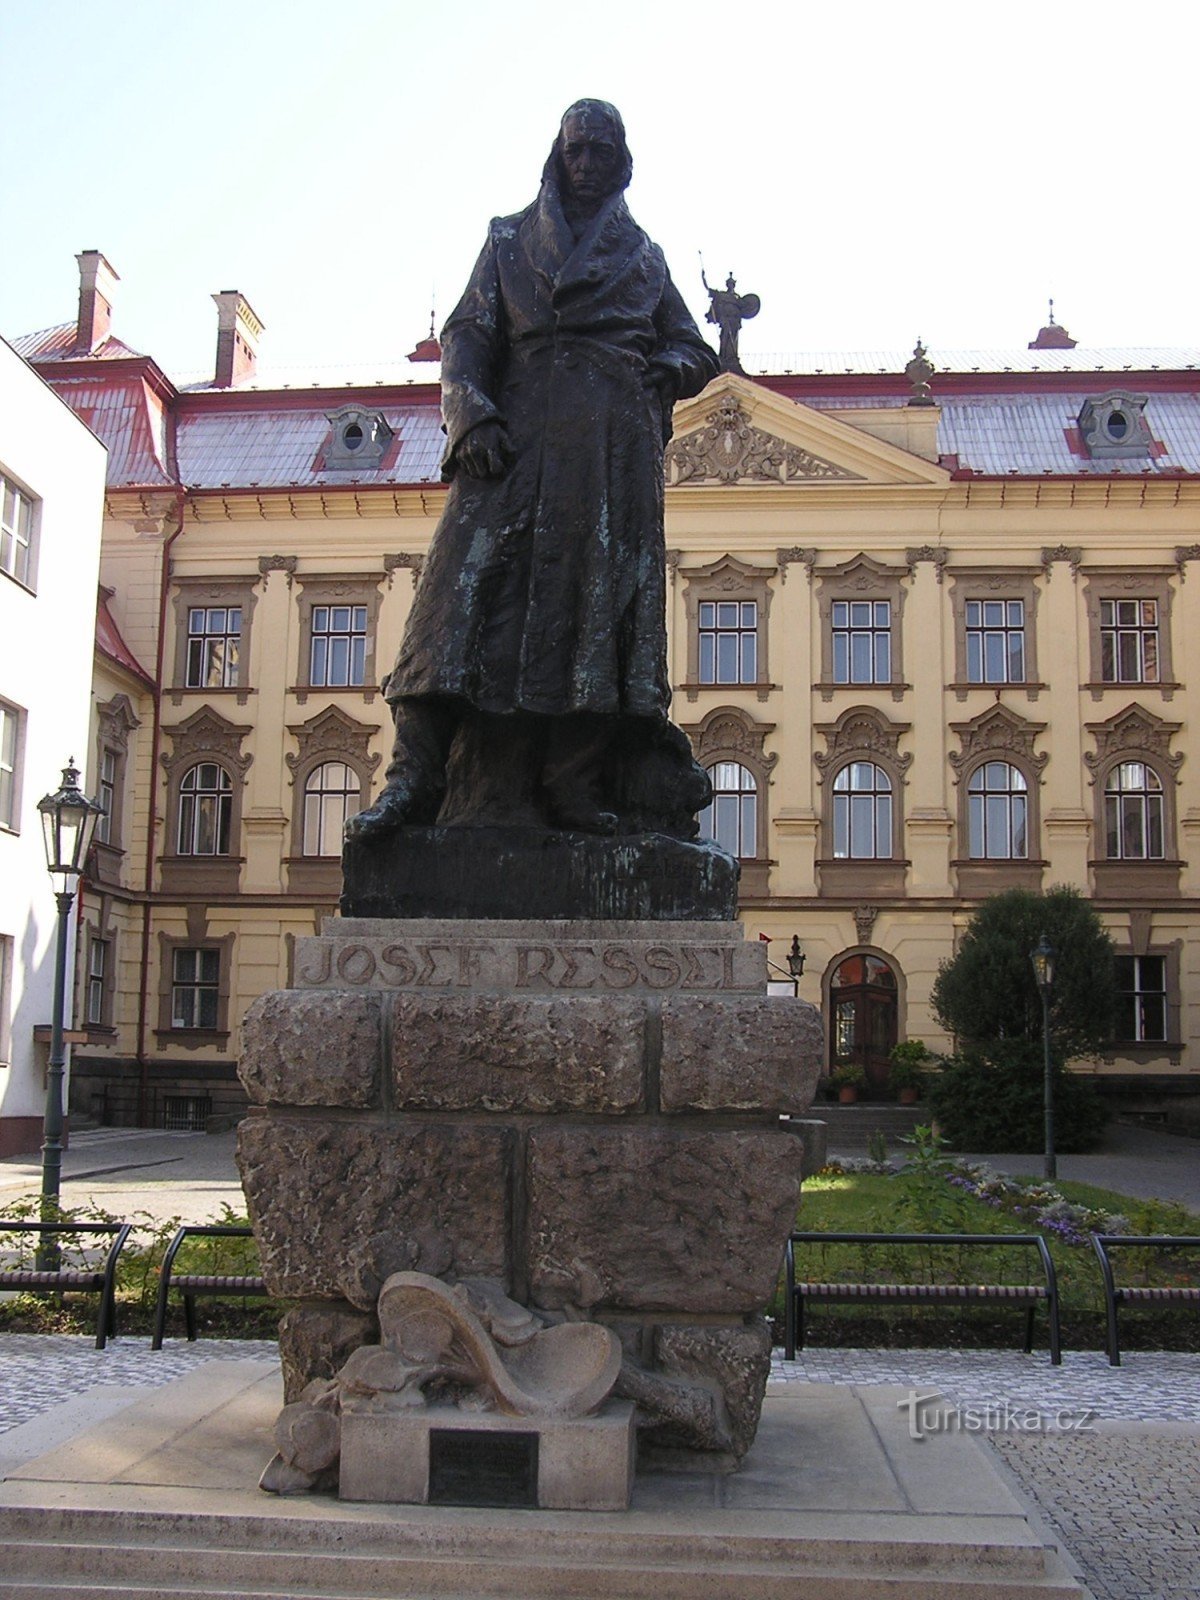 statuia lui Josef Ressel